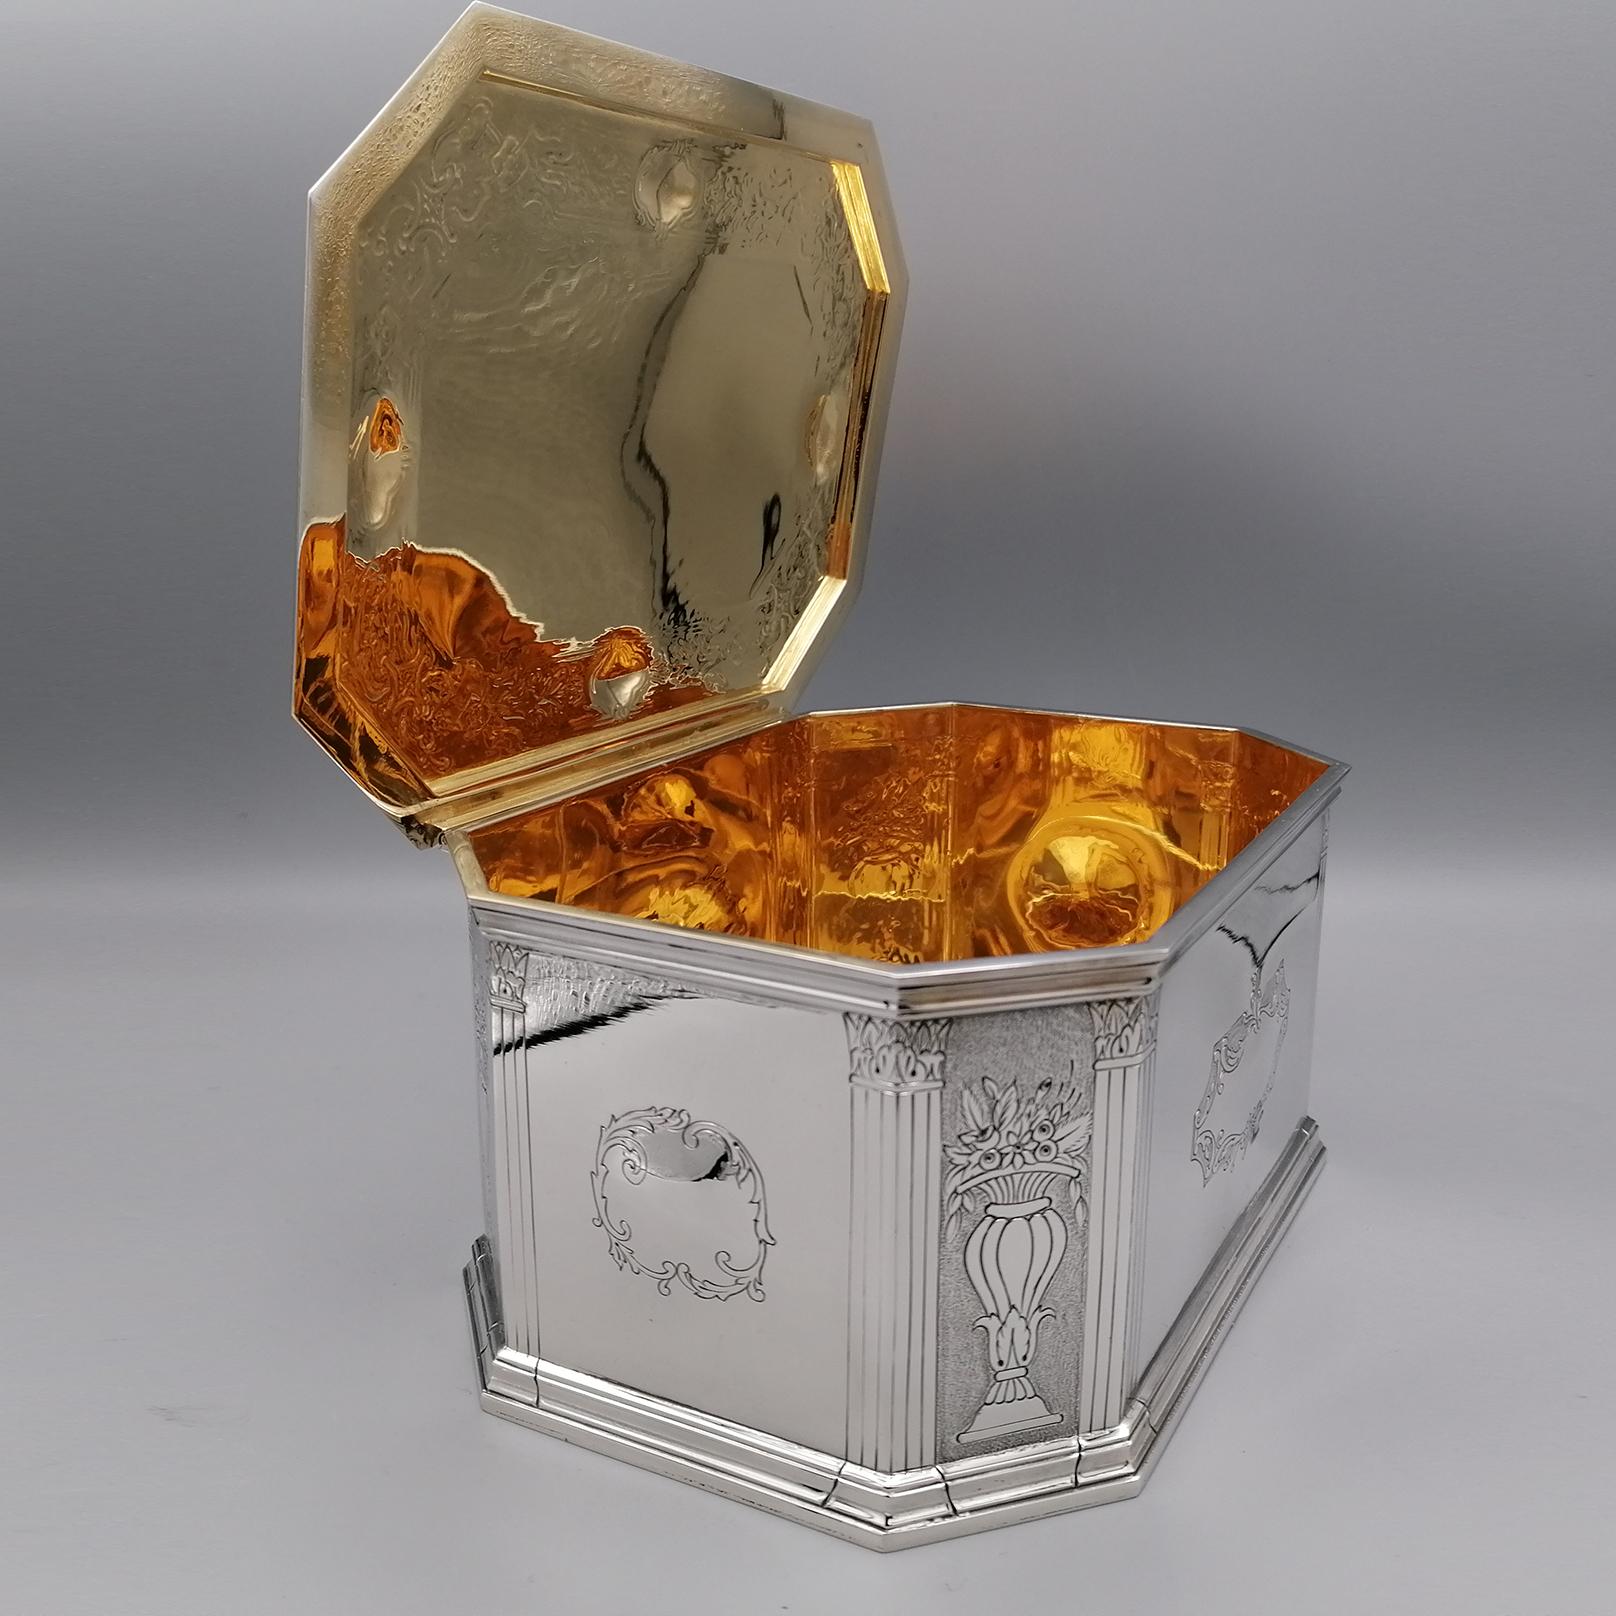 Boîte de table rectangulaire/octogonale en argent 925.
La boîte a été entièrement fabriquée à la main à Florence à la fin du siècle dernier.
Gravé de motifs floraux et abstraits, il a été fini avec la technique du moletage, créée pour mettre en